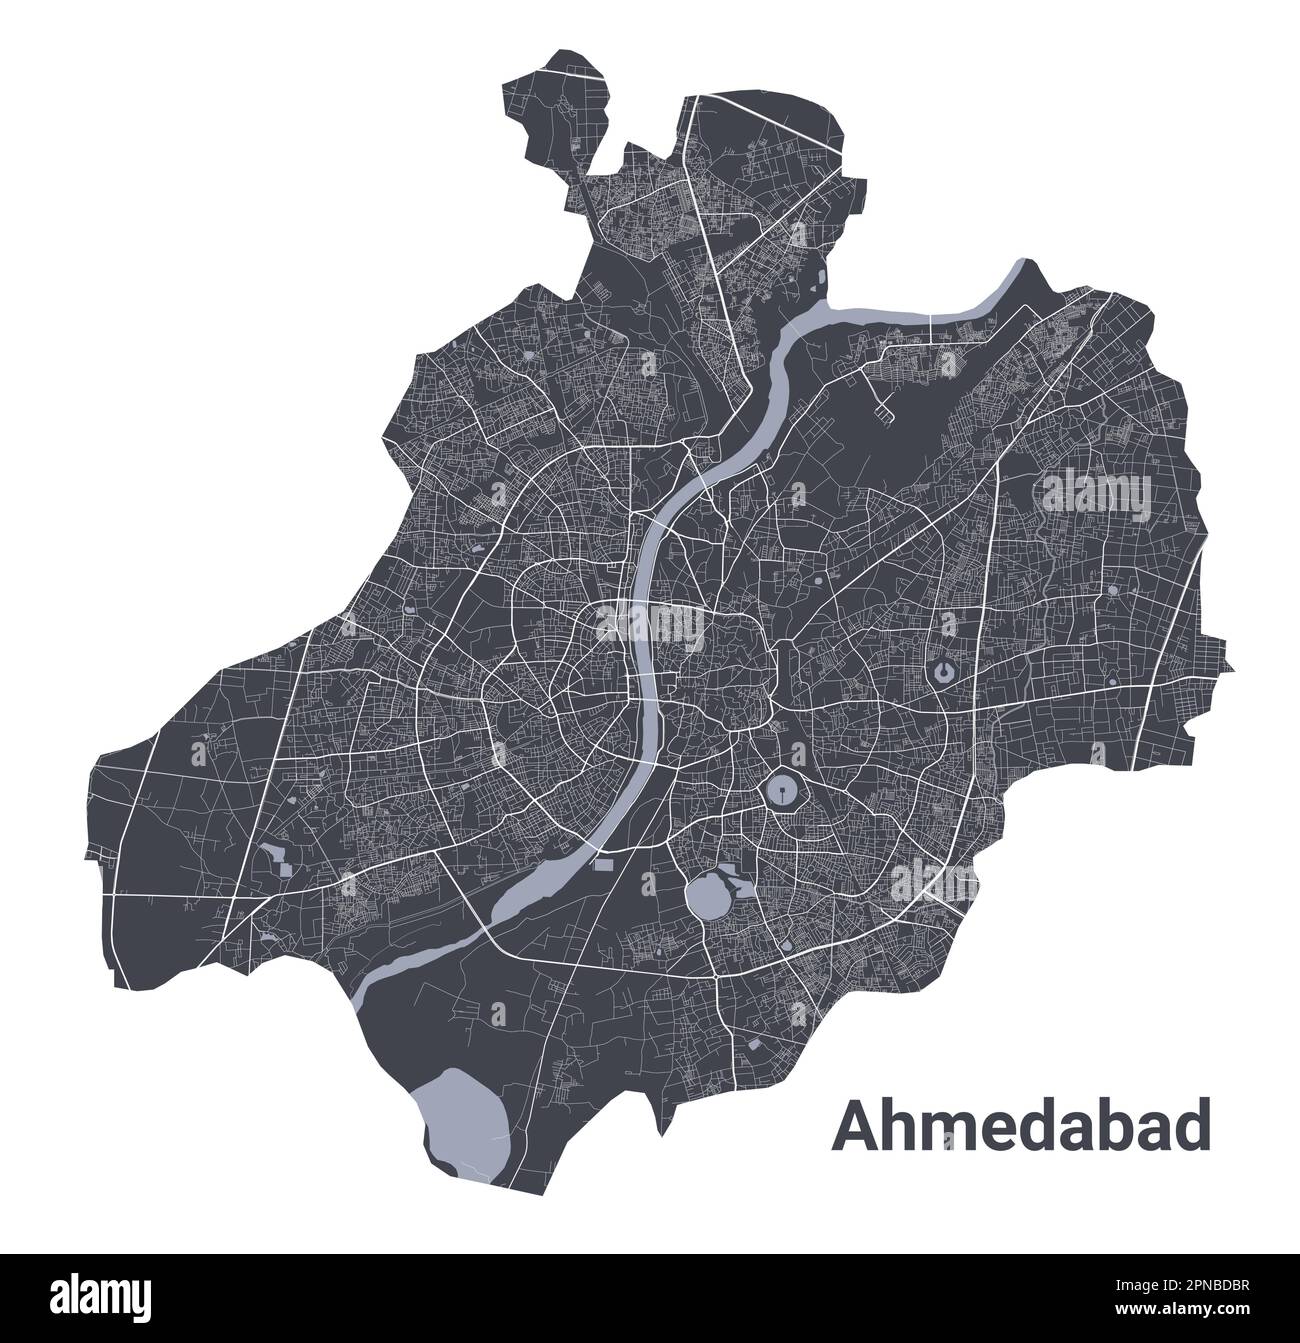 Mappa di Ahmedabad. Mappa vettoriale dettagliata dell'area amministrativa della città di Ahmedabad. Poster sulla città con vista metropolitana sull'aria. Terra nera con strade bianche e Ave Illustrazione Vettoriale